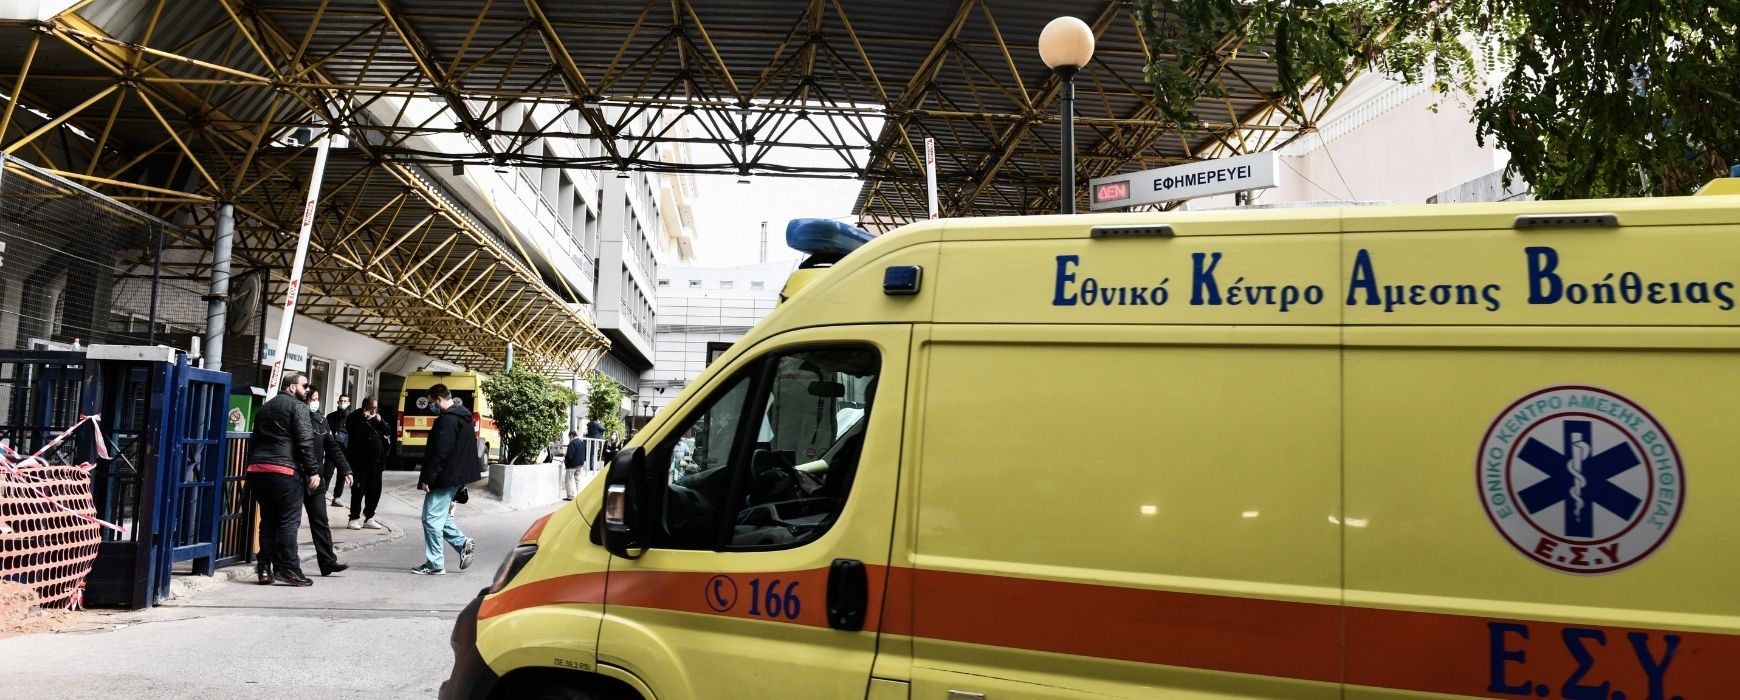 Τραγωδία στη Θεσσαλονίκη: Νεκρό βρέφος 47 ημερών – Έπεσε από τα χέρια του πατέρα του (Video)